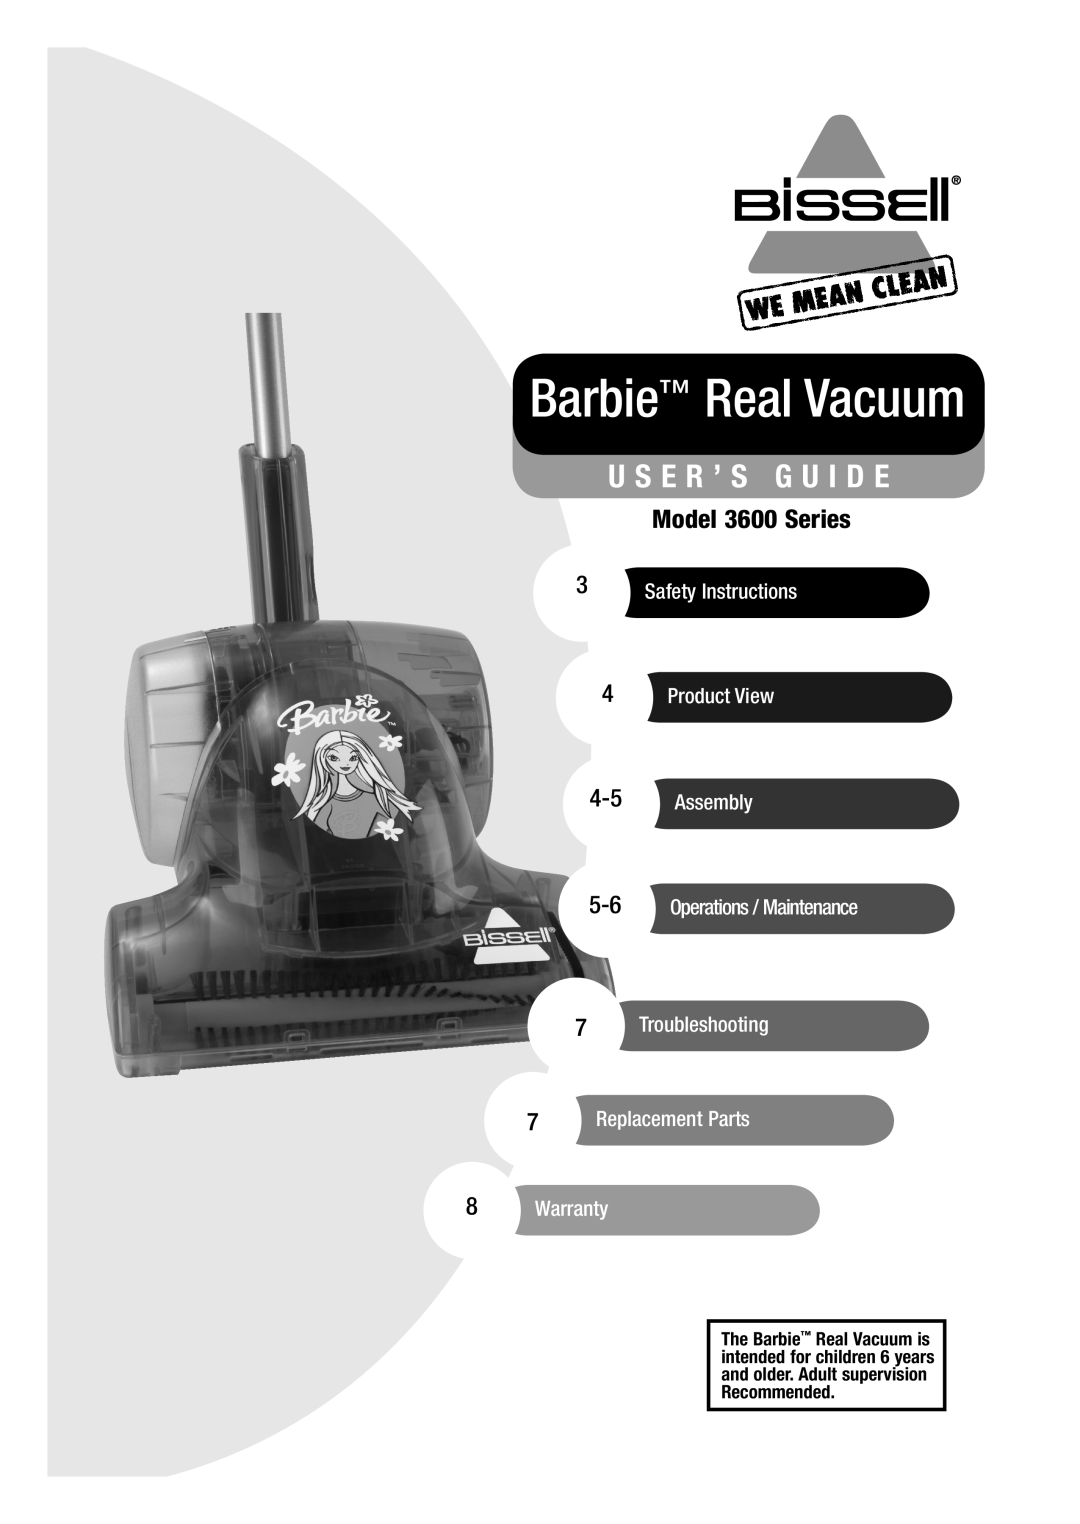 Bissell 3600 warranty U S E R ’ S G U I D E, Barbie Real Vacuum 